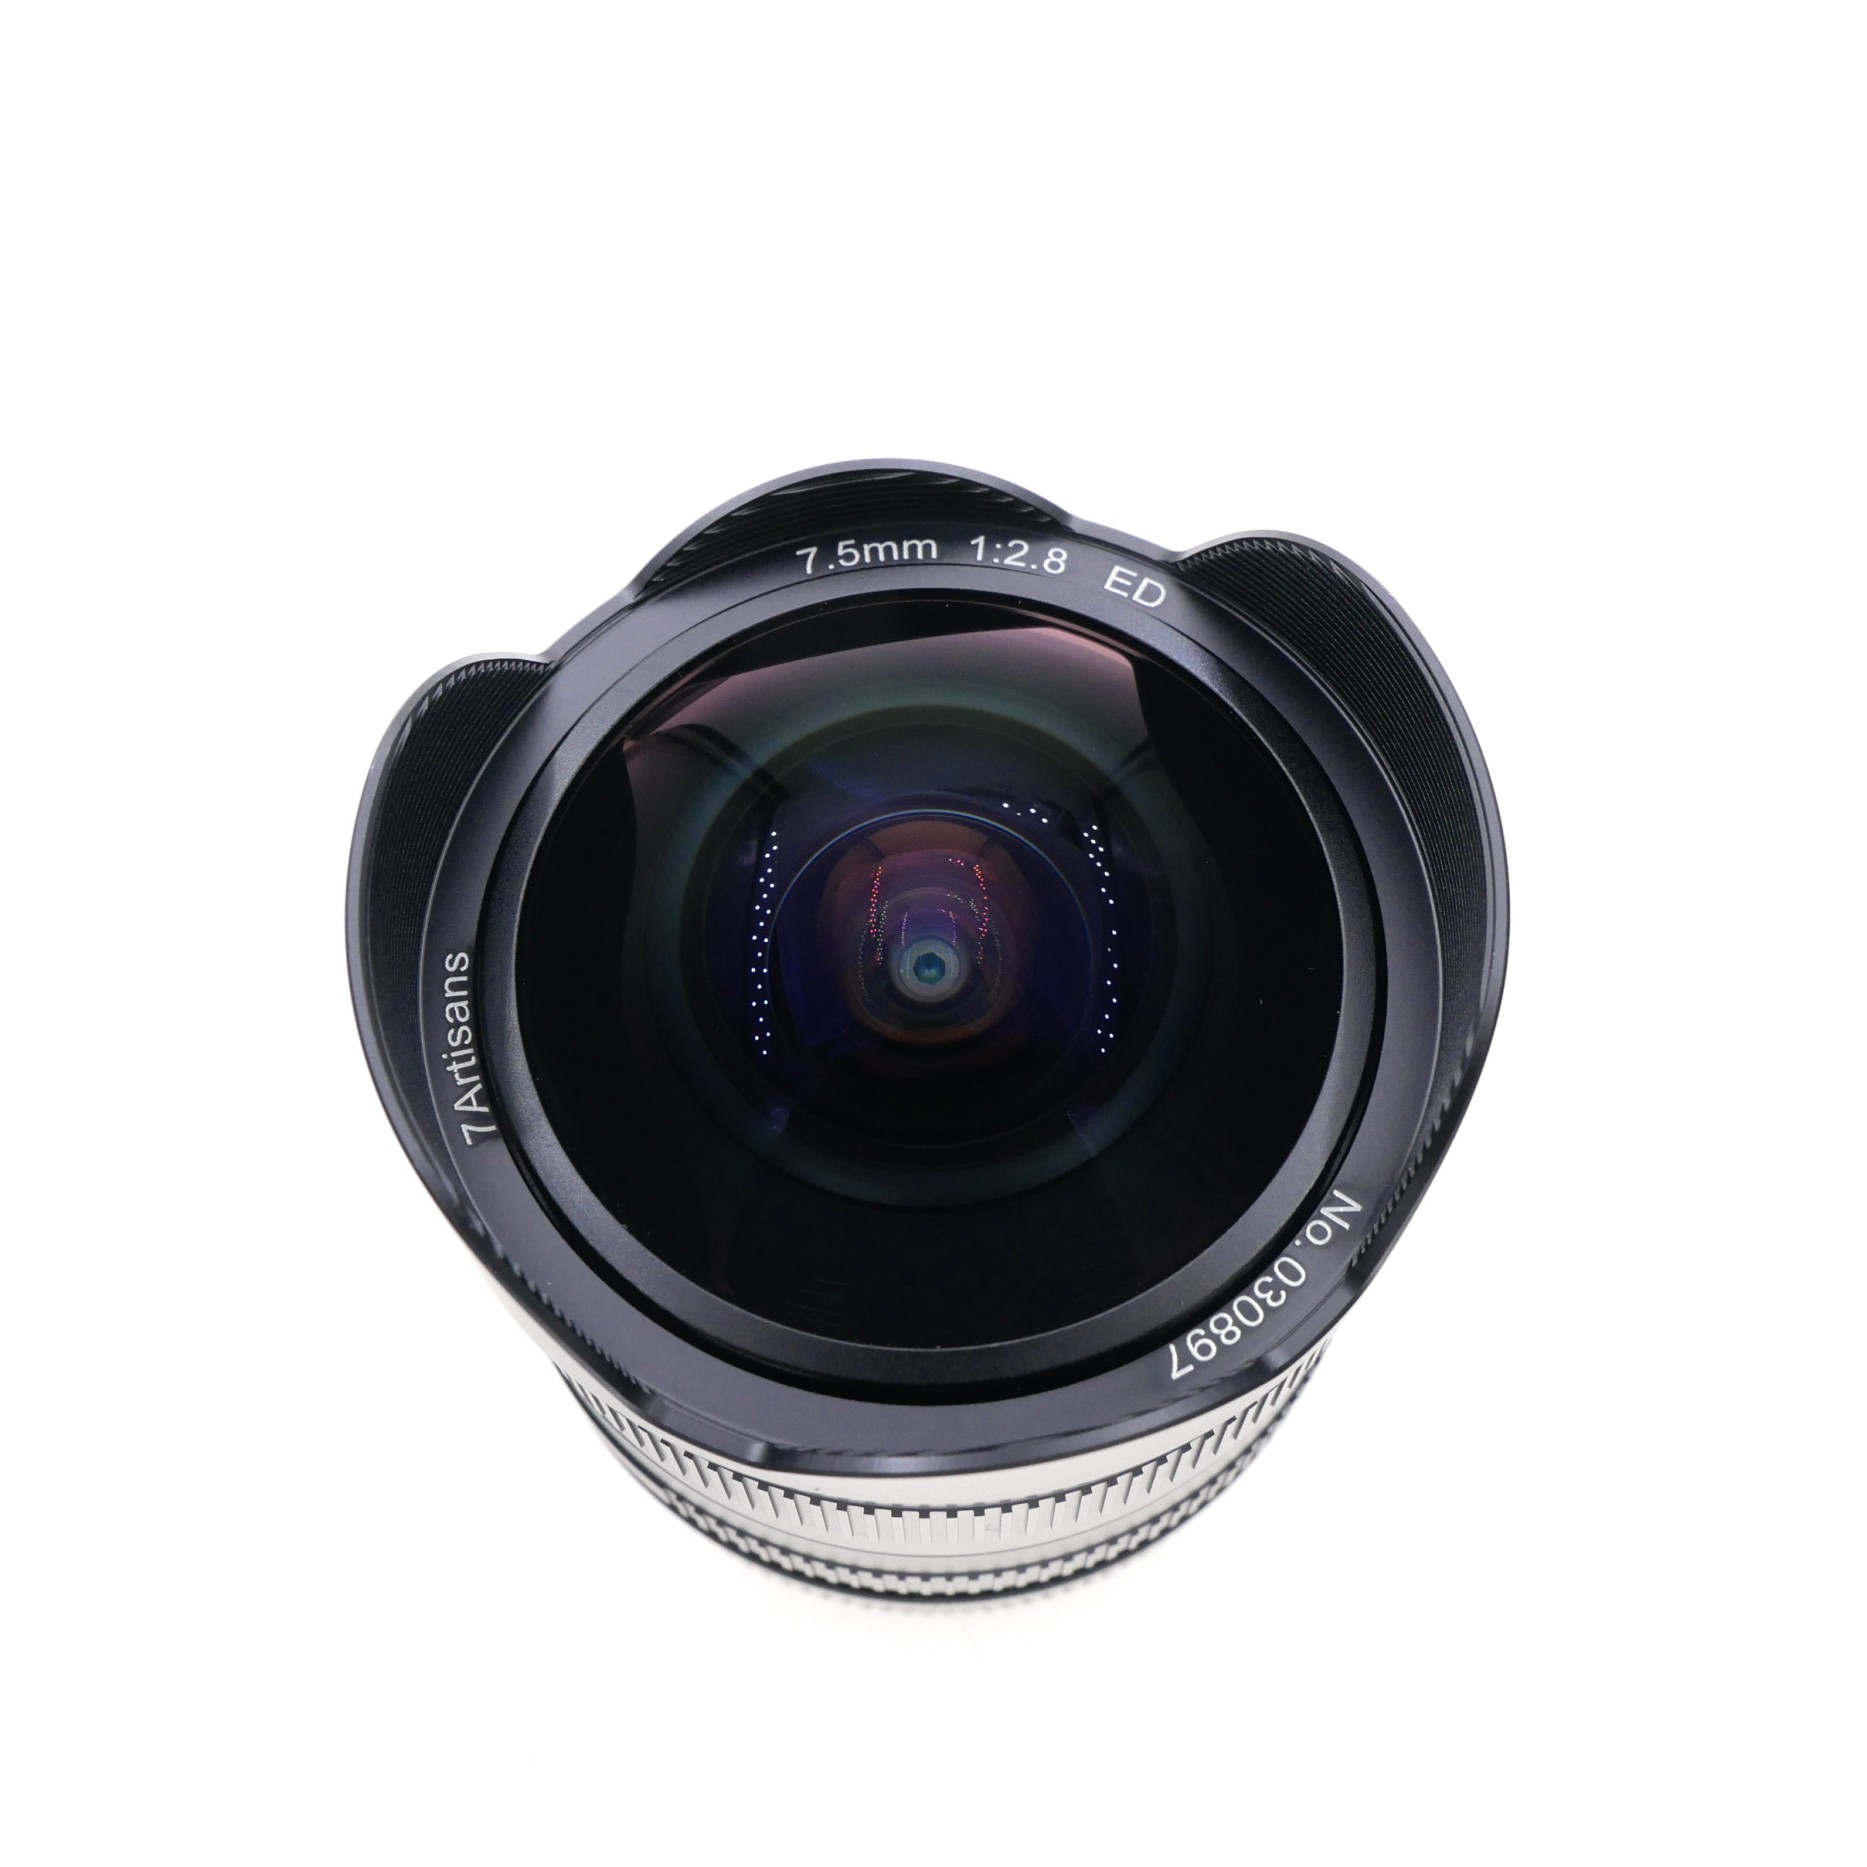 S-H-TCJ5PF_2.jpg - 7Artisans 7.5mm F2.8 II Fish-Eye Lens for Canon EF-M Mount 